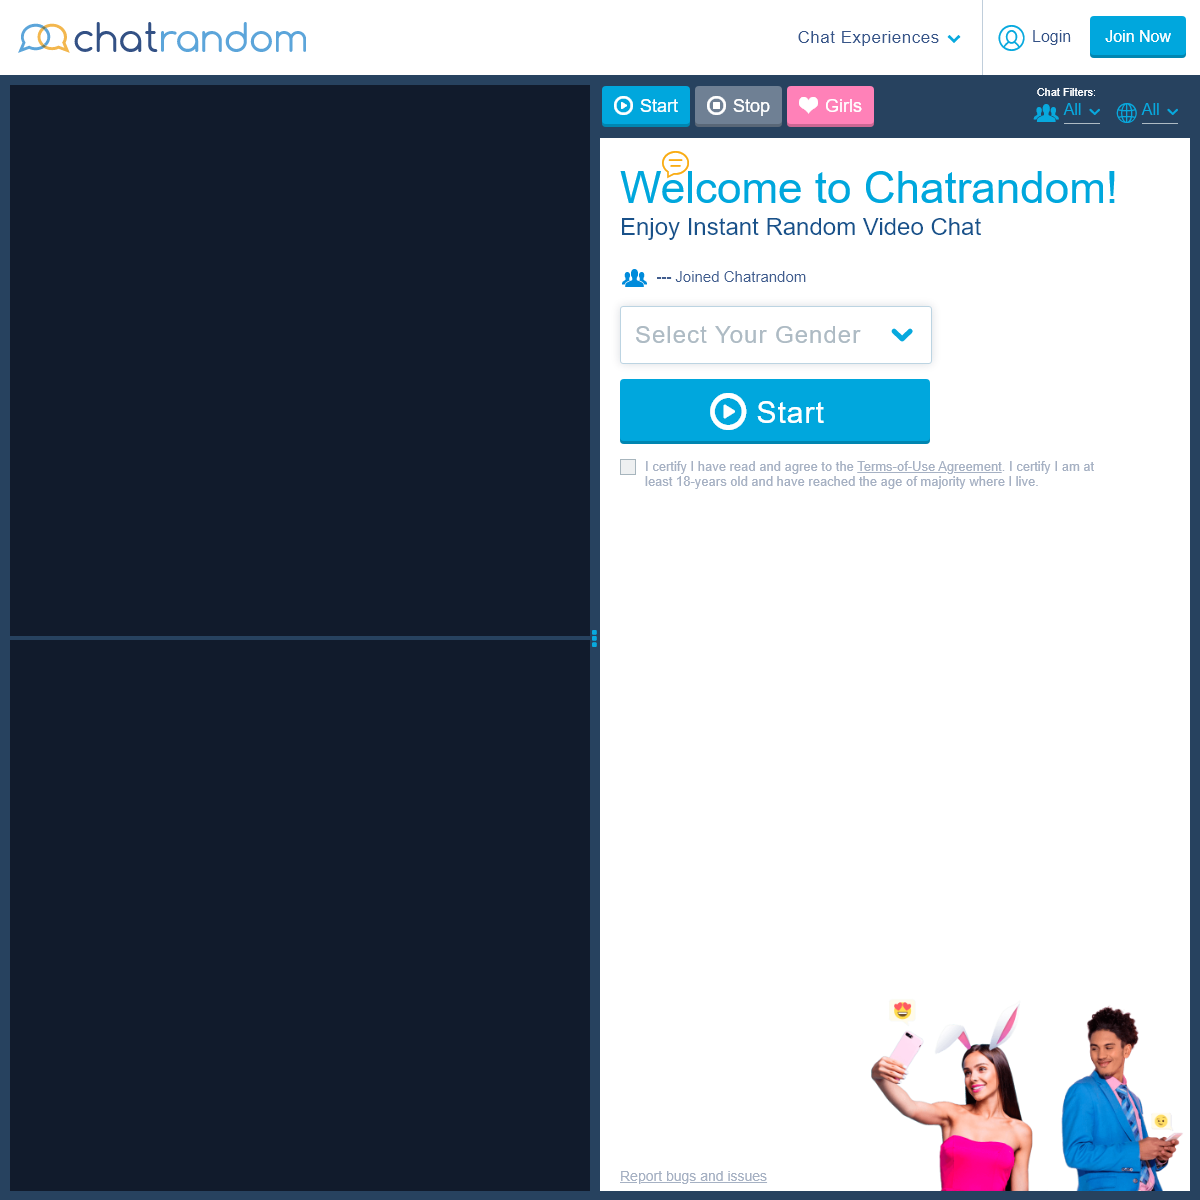 A complete backup of chatrandom.com